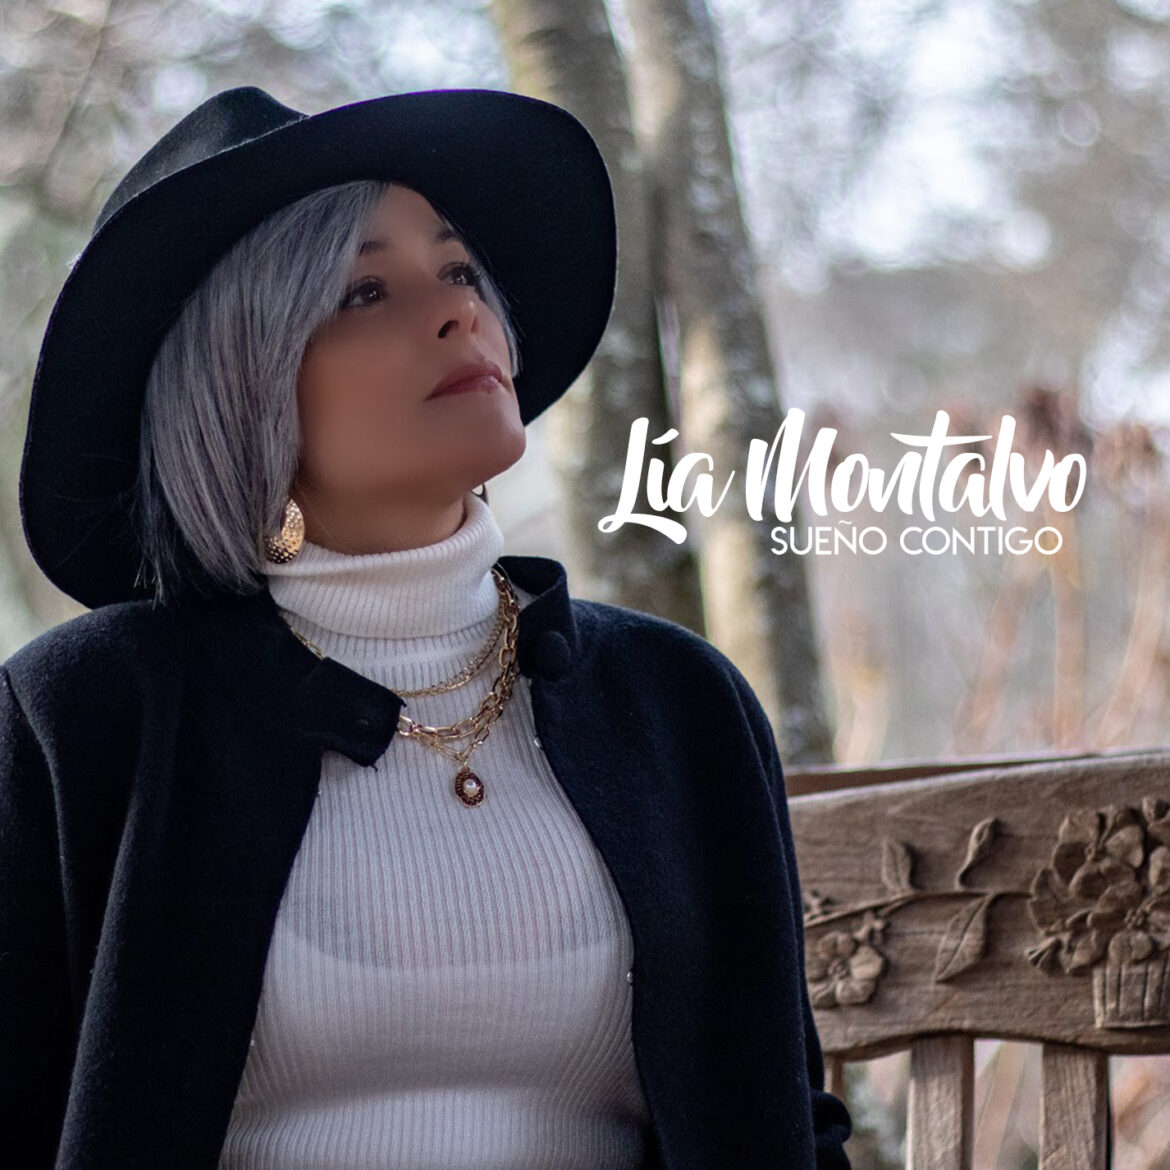 Lia Montalvo lanza su primer sencillo titulado “Sueño Contigo”